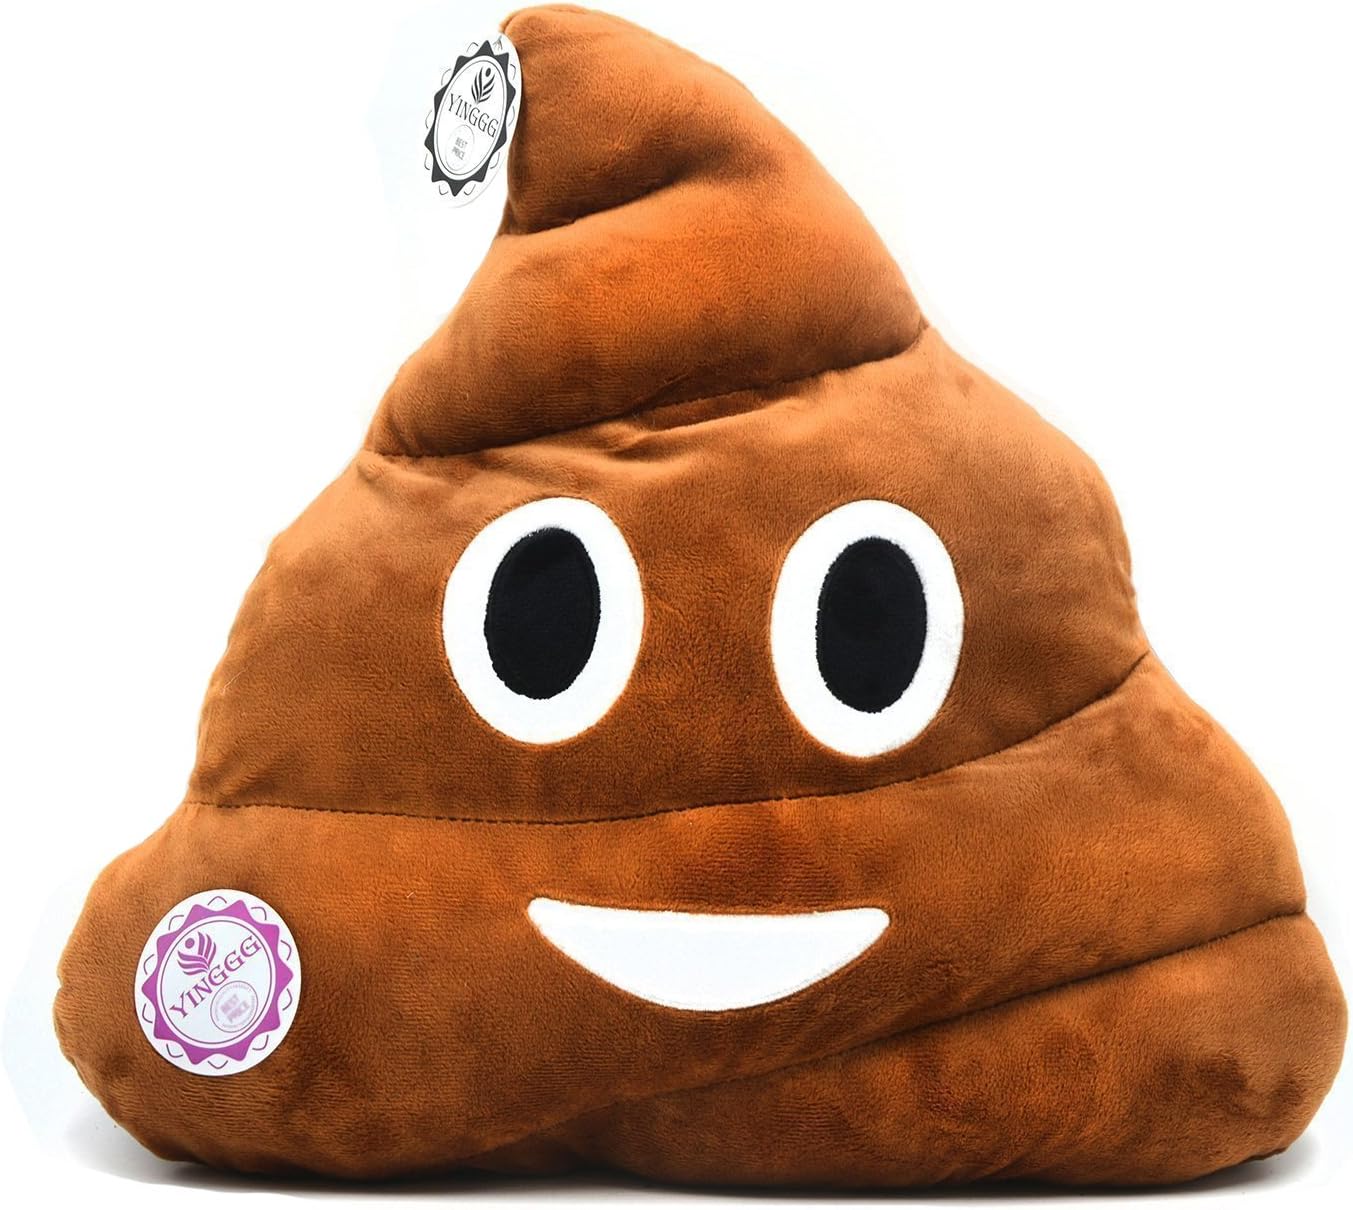 Poop emoji Pillow - Decorative poop face